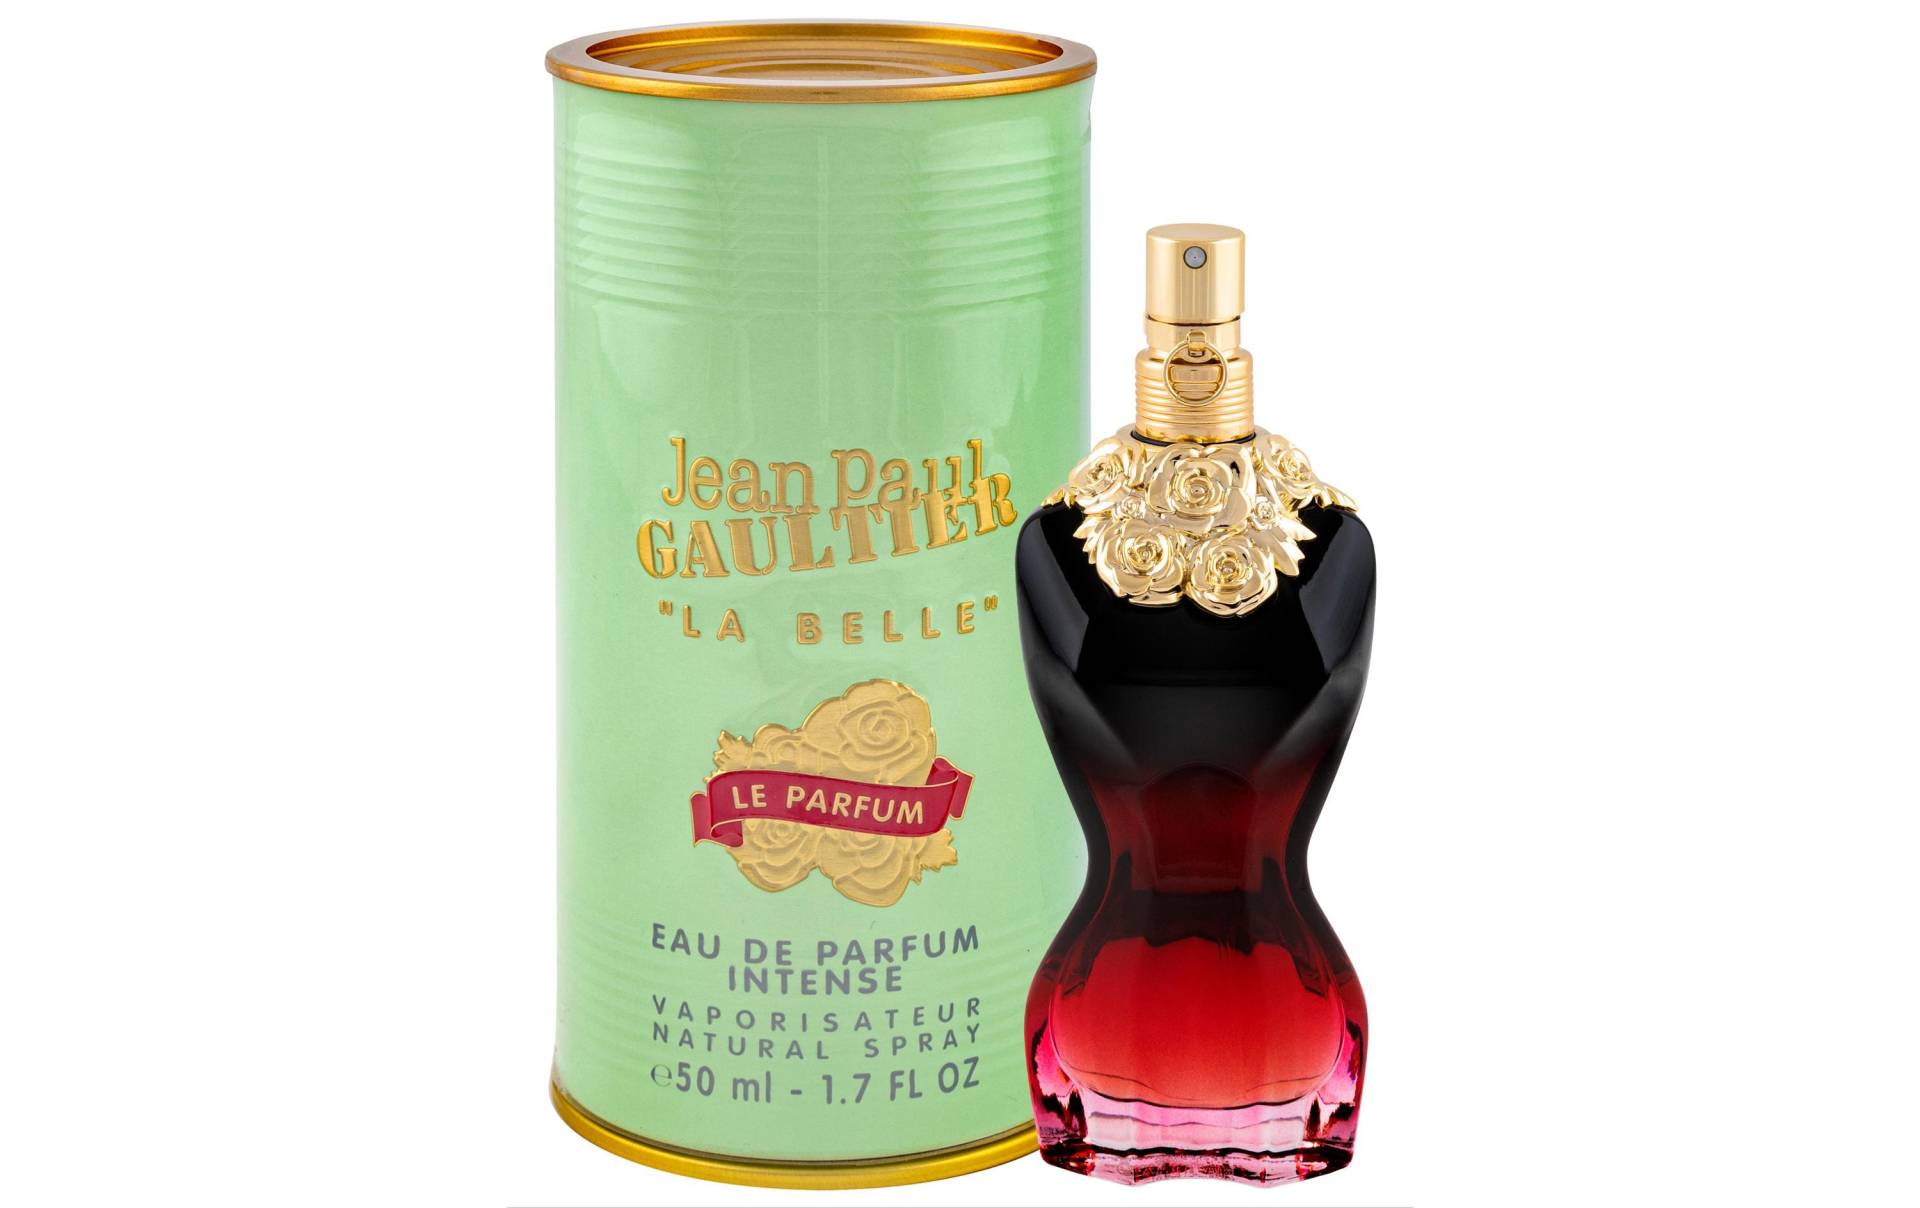 JEAN PAUL GAULTIER Eau de Parfum »Jean Paul Gaultier Eau de Parfum« von JEAN PAUL GAULTIER